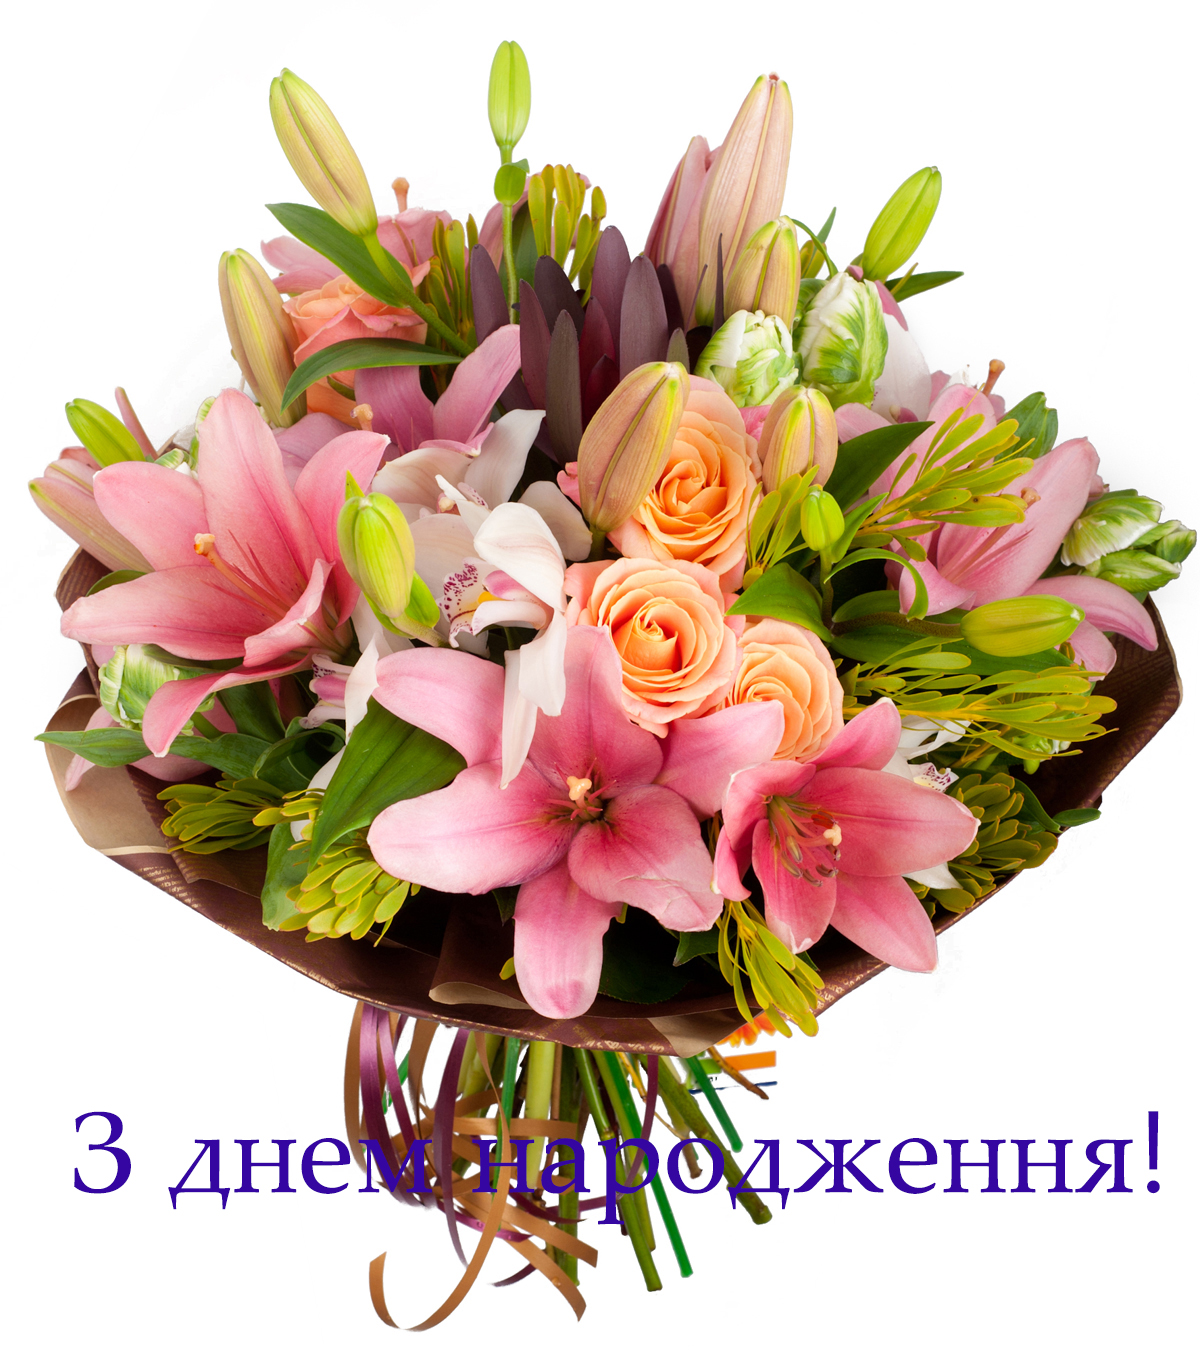 За дорученням Ради Нотаріальної палати України, голів регіональних відділень вітаємо Вас з Днем народження!
